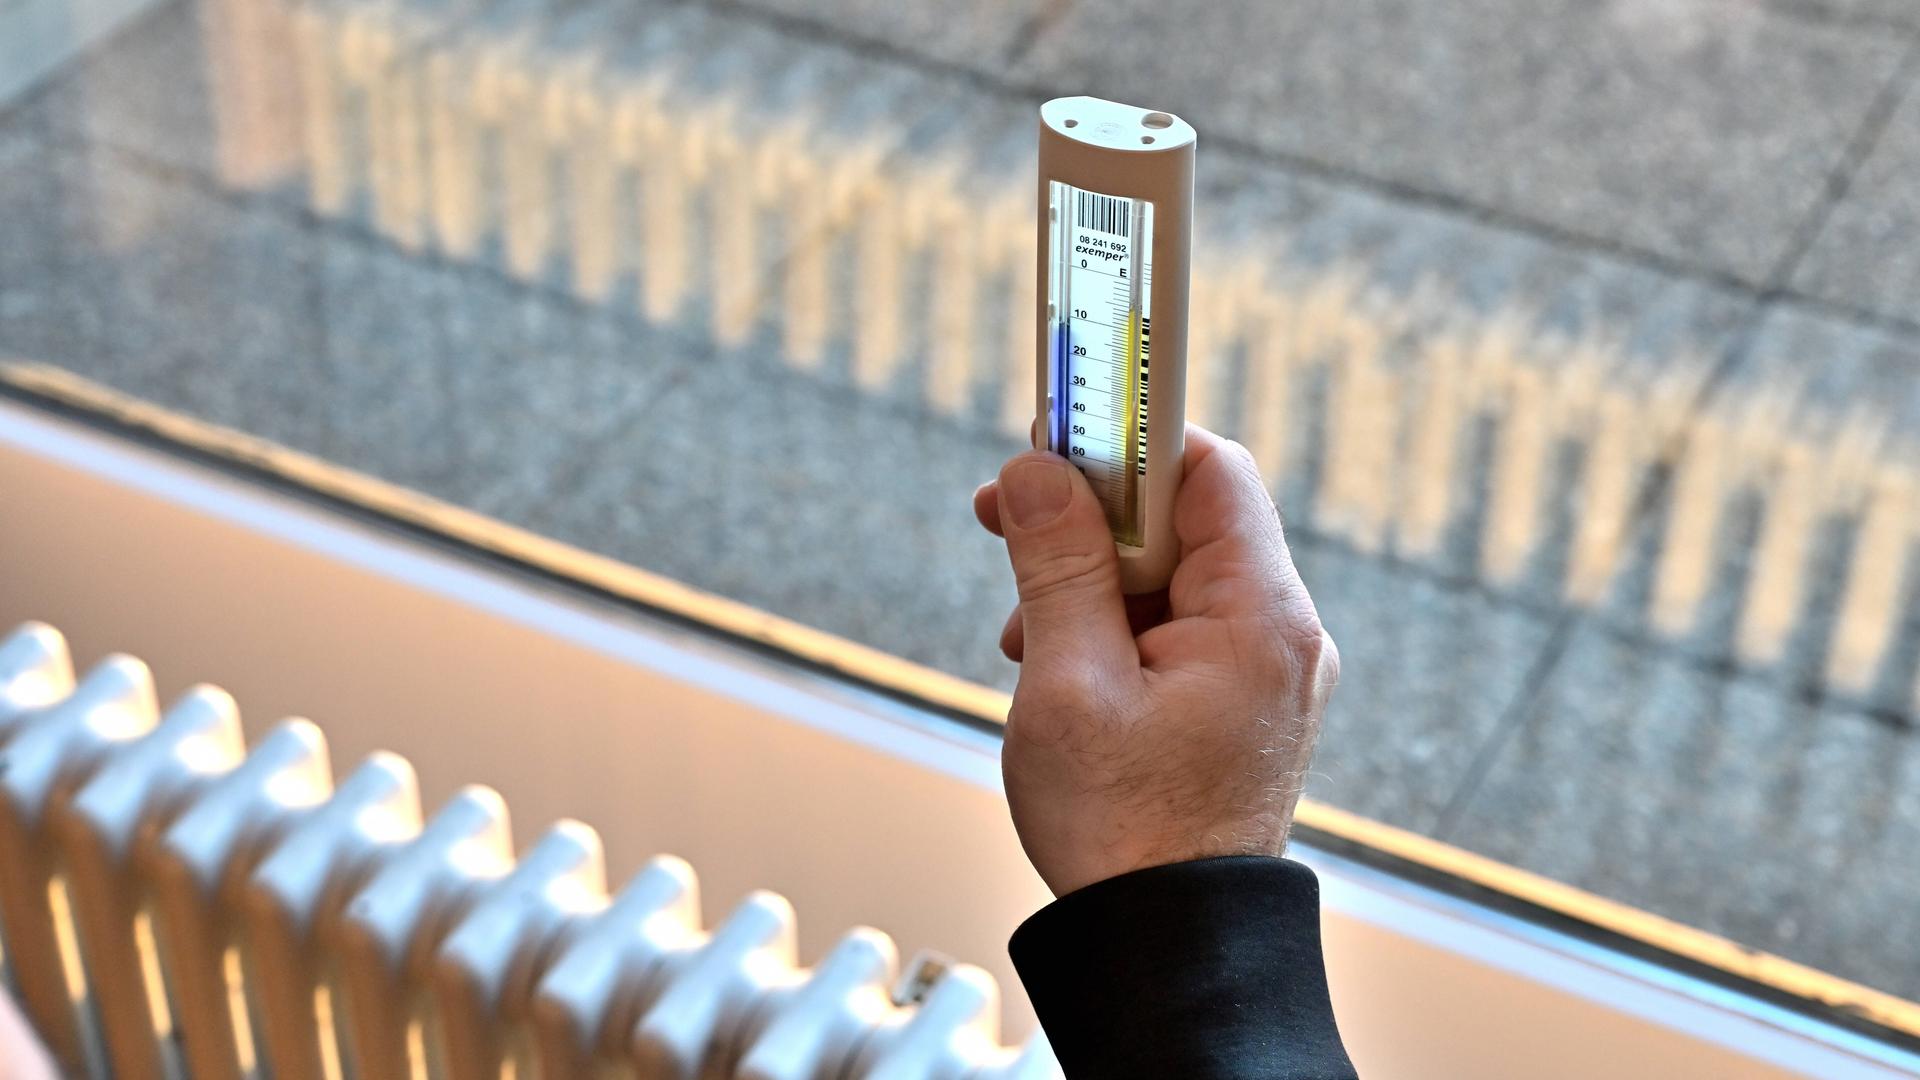 Vor einem Fenster hängt ein Heizkörper, ein Mann hält ein Fernablesegerät gegen das Licht sodass man die Thermometer-Anzeige lesen kann.